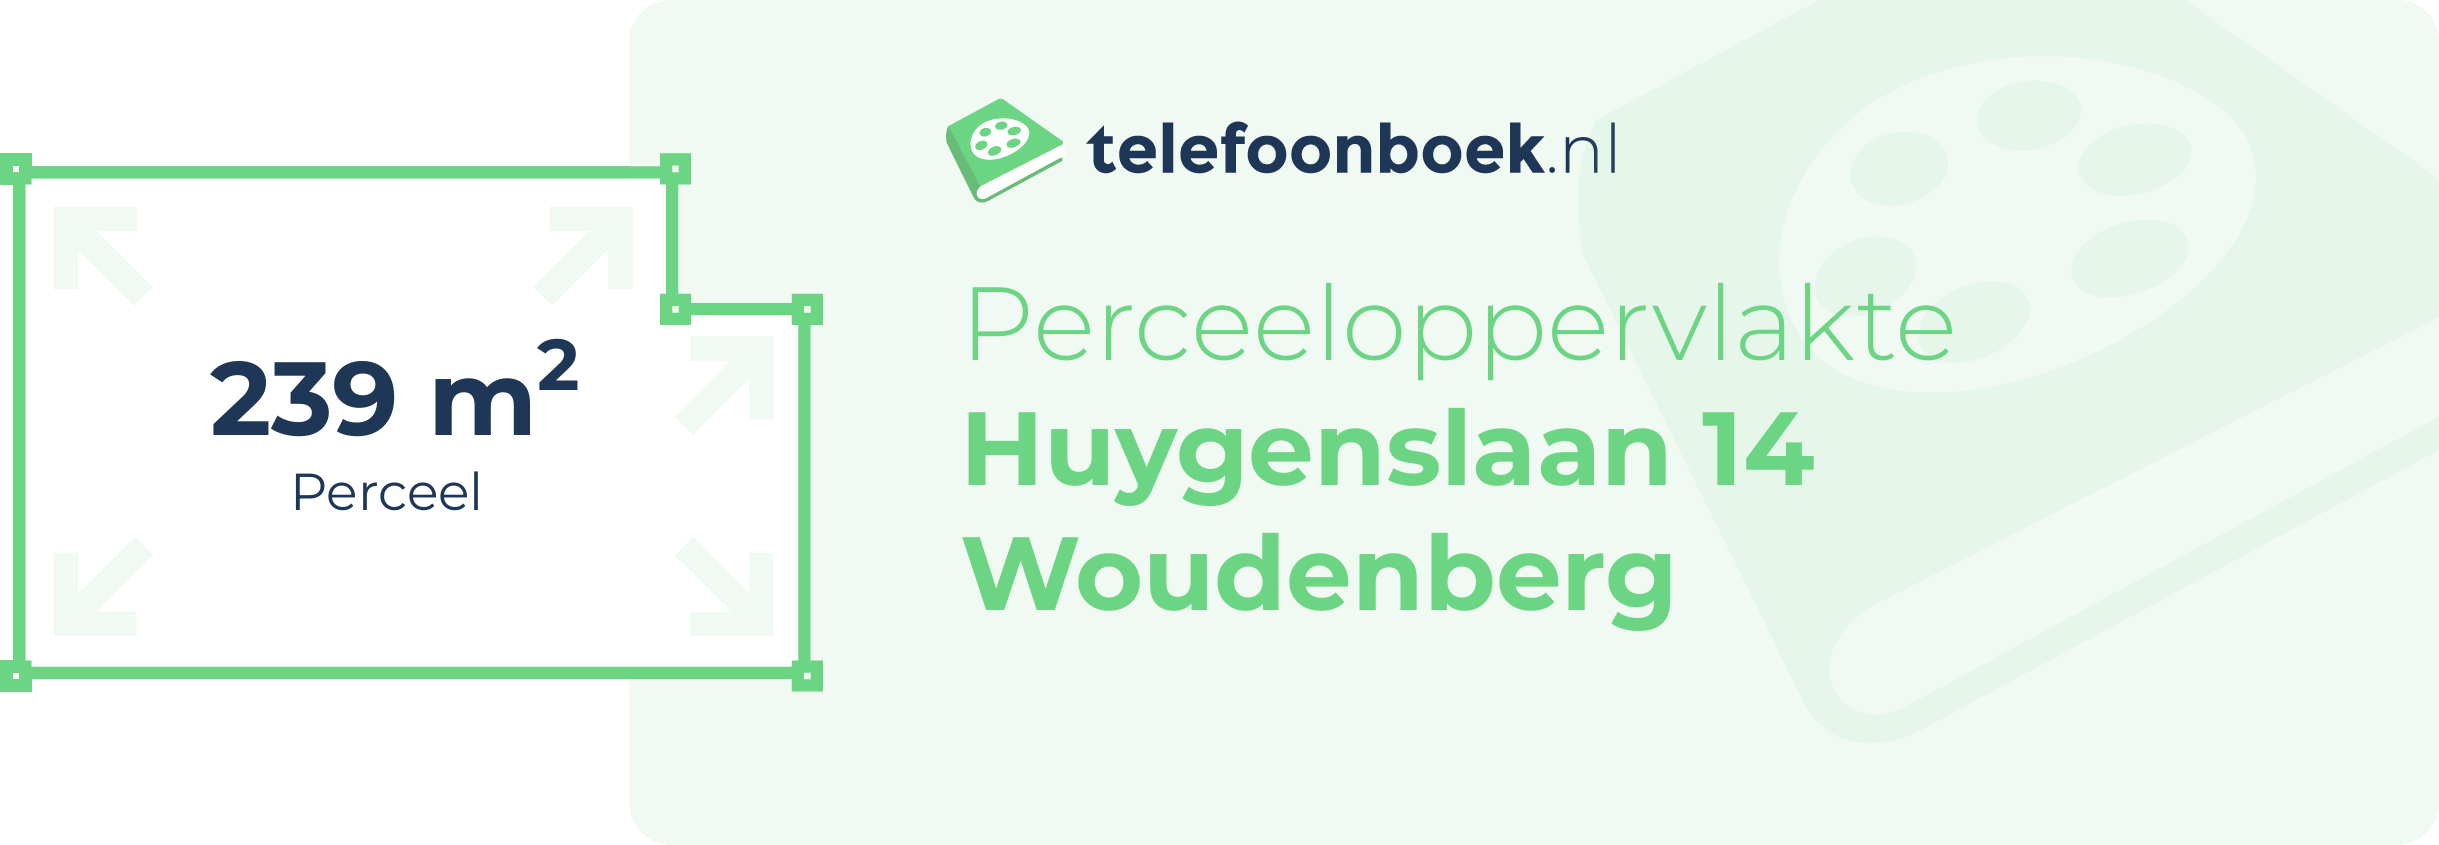 Perceeloppervlakte Huygenslaan 14 Woudenberg